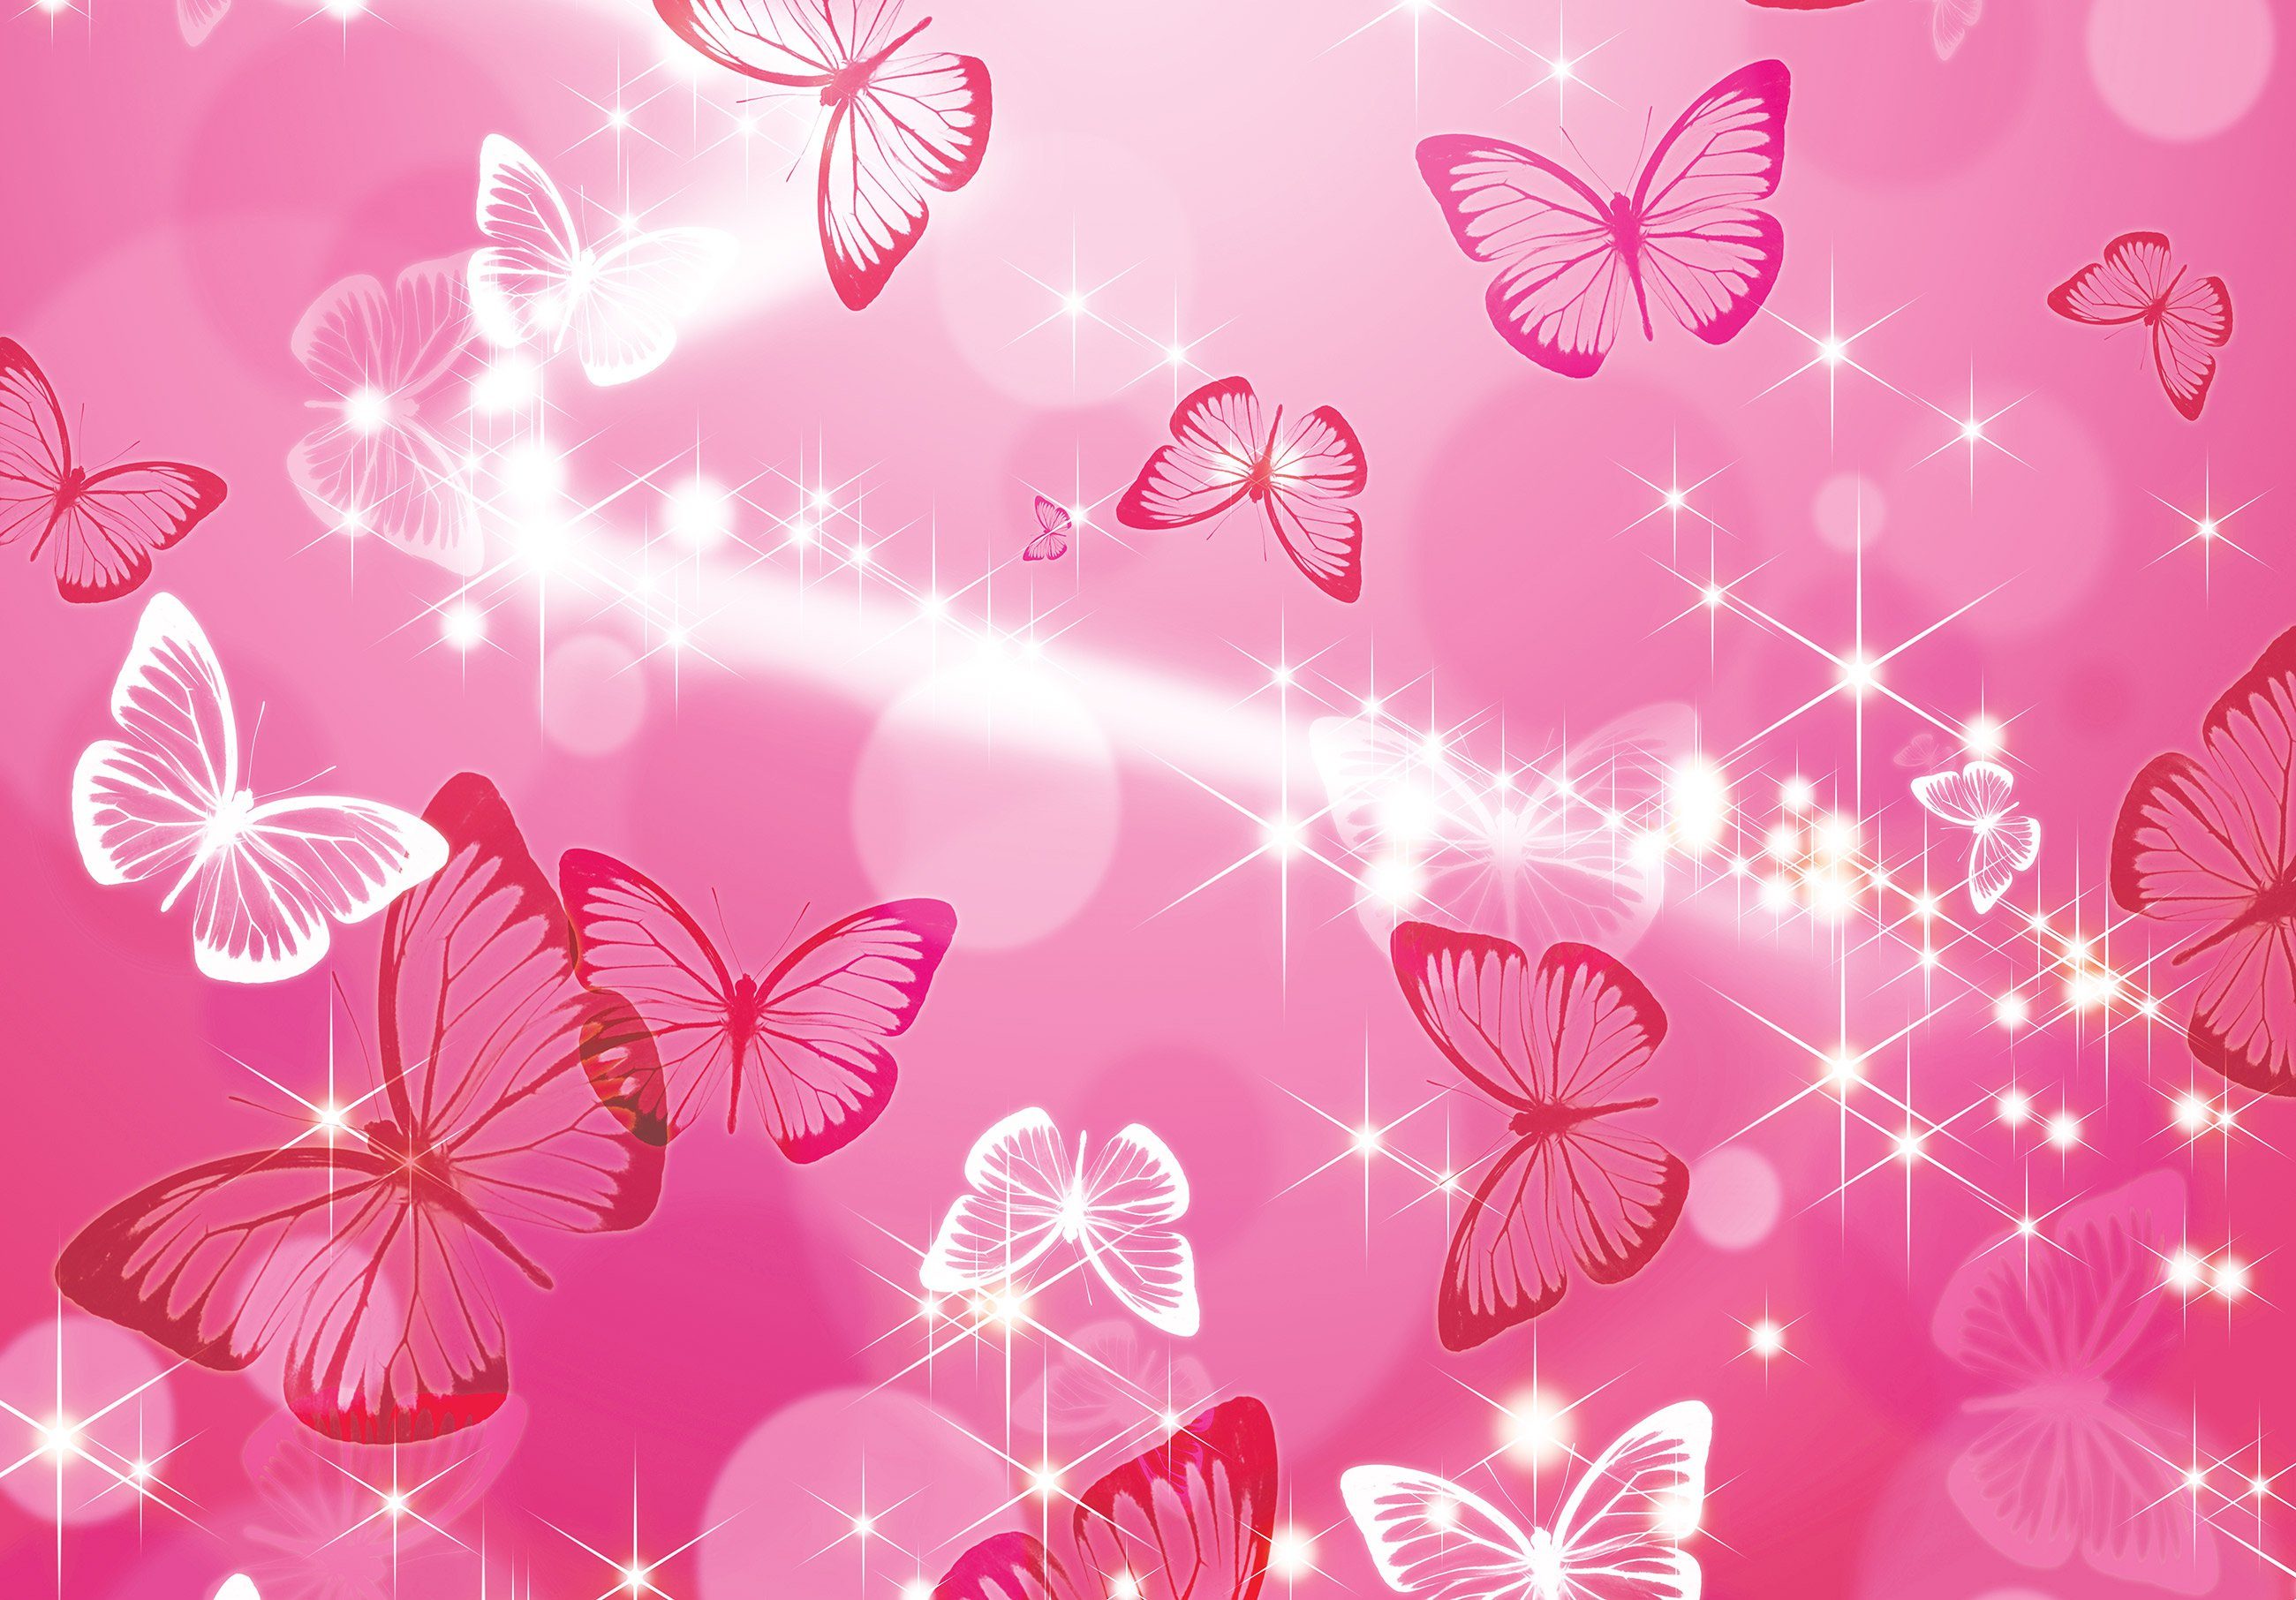 Wallarena Fototapete Kinderzimmer Mädchen Schmetterlinge Rosa Magie Stern Vlies Tapete für Babyzimmer oder Mädchenzimmer Vliestapete Wandtapete Motivtapete, Glatt, Schmetterlinge, Vliestapete inklusive Kleister